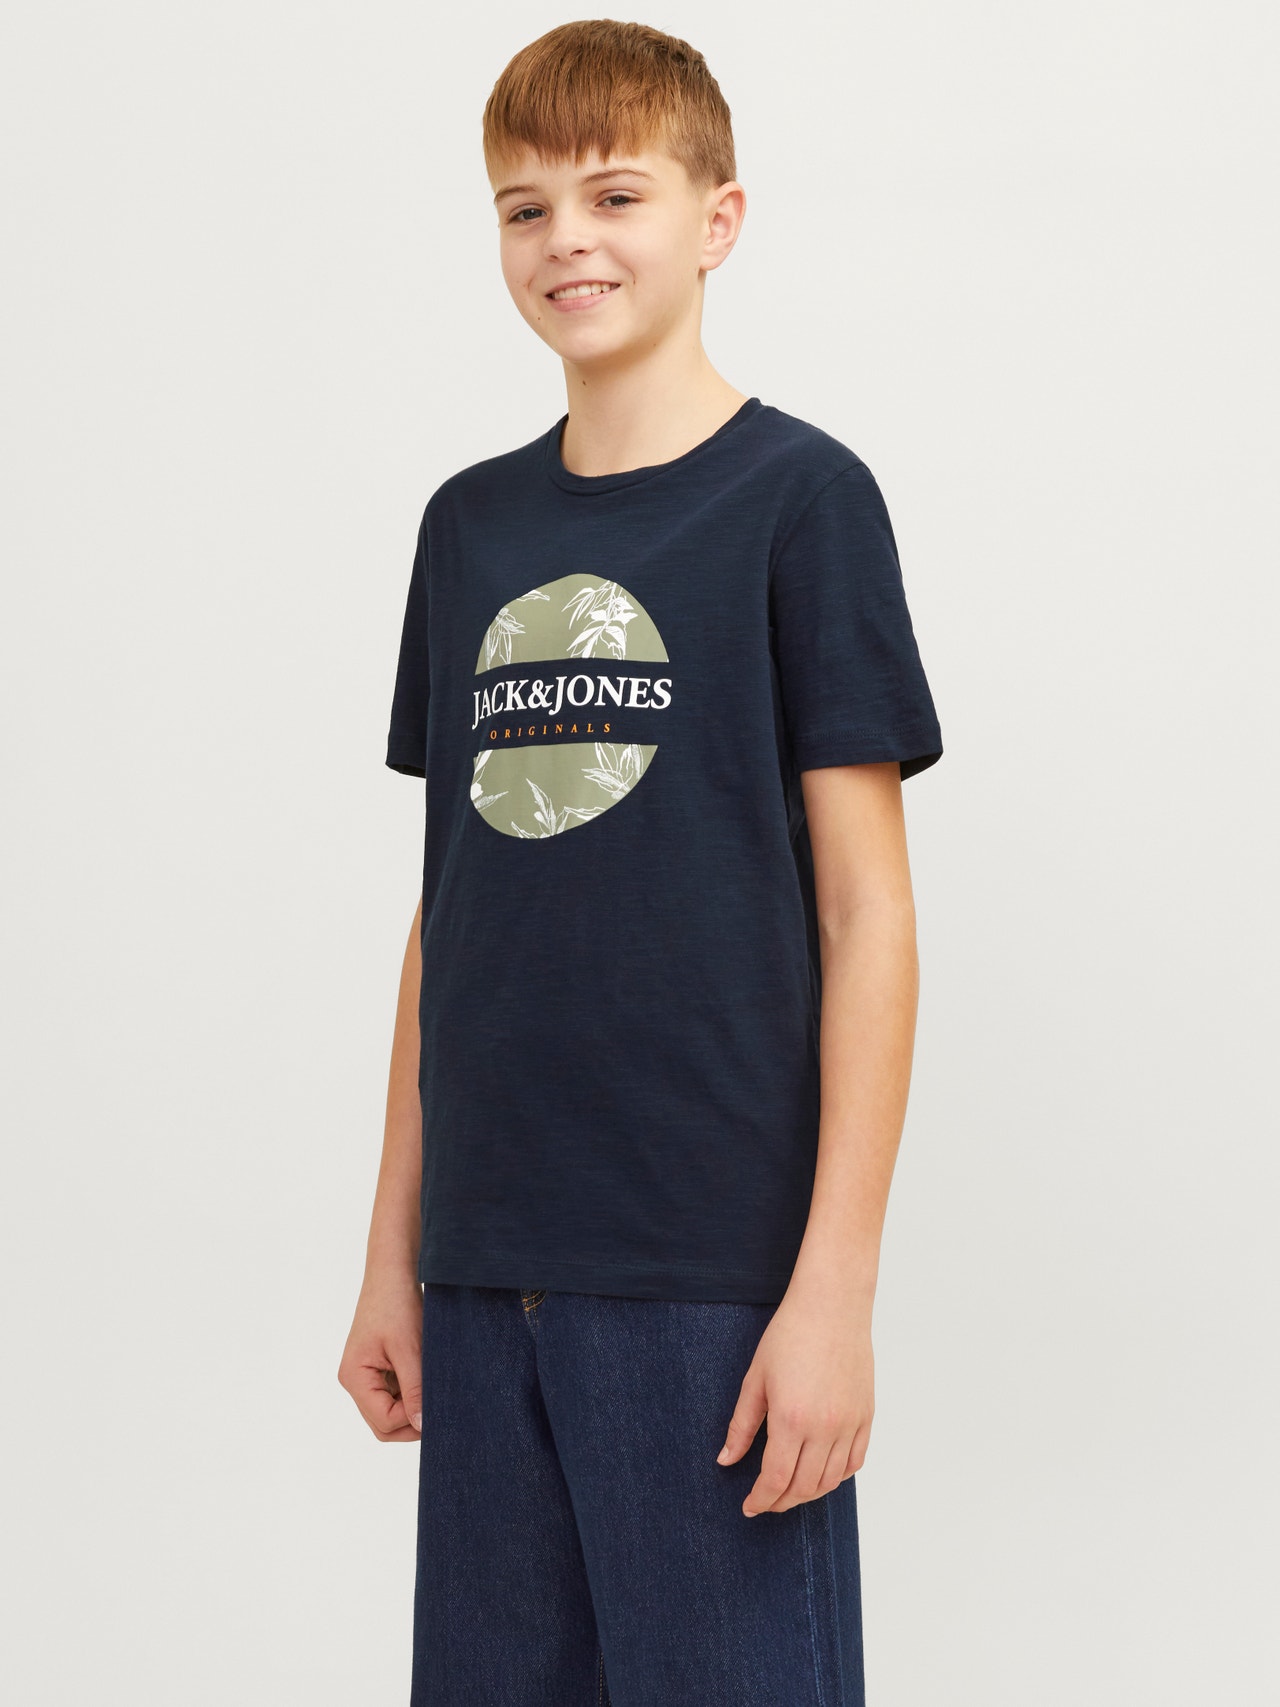 Jack & Jones Gedruckt T-shirt Für jungs -Navy Blazer - 12258234